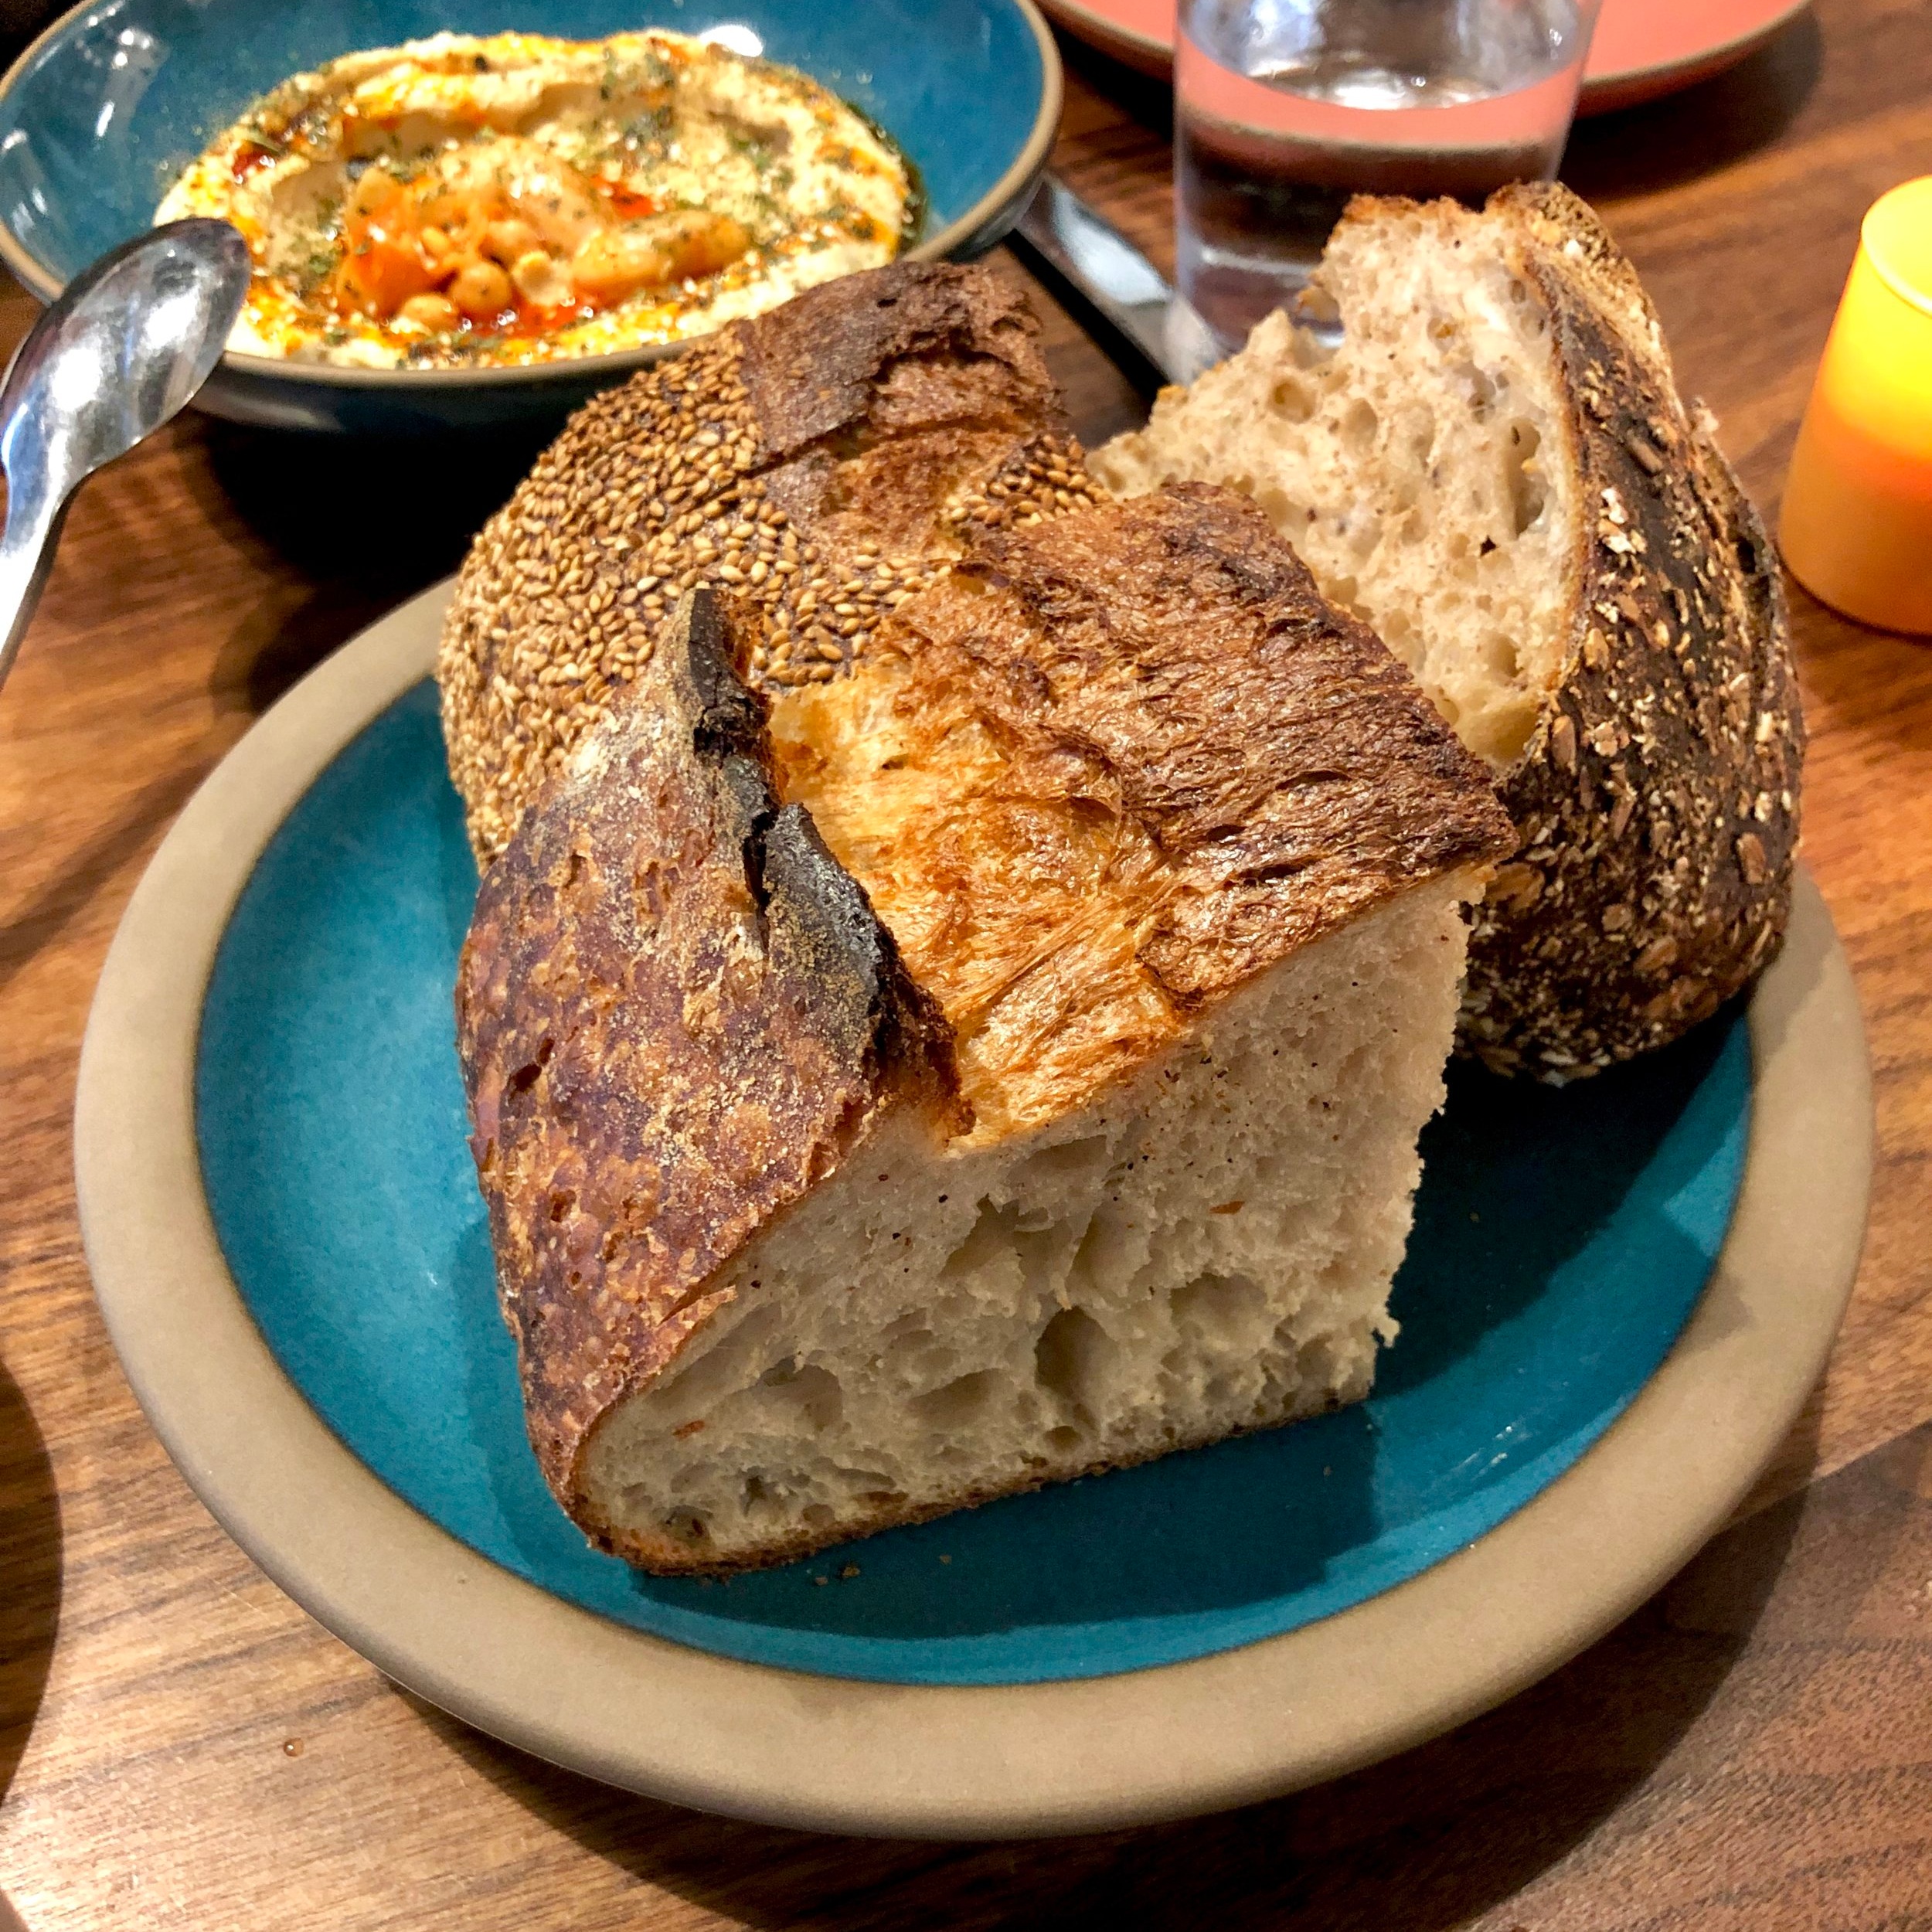  assorted breads // kefir butter 